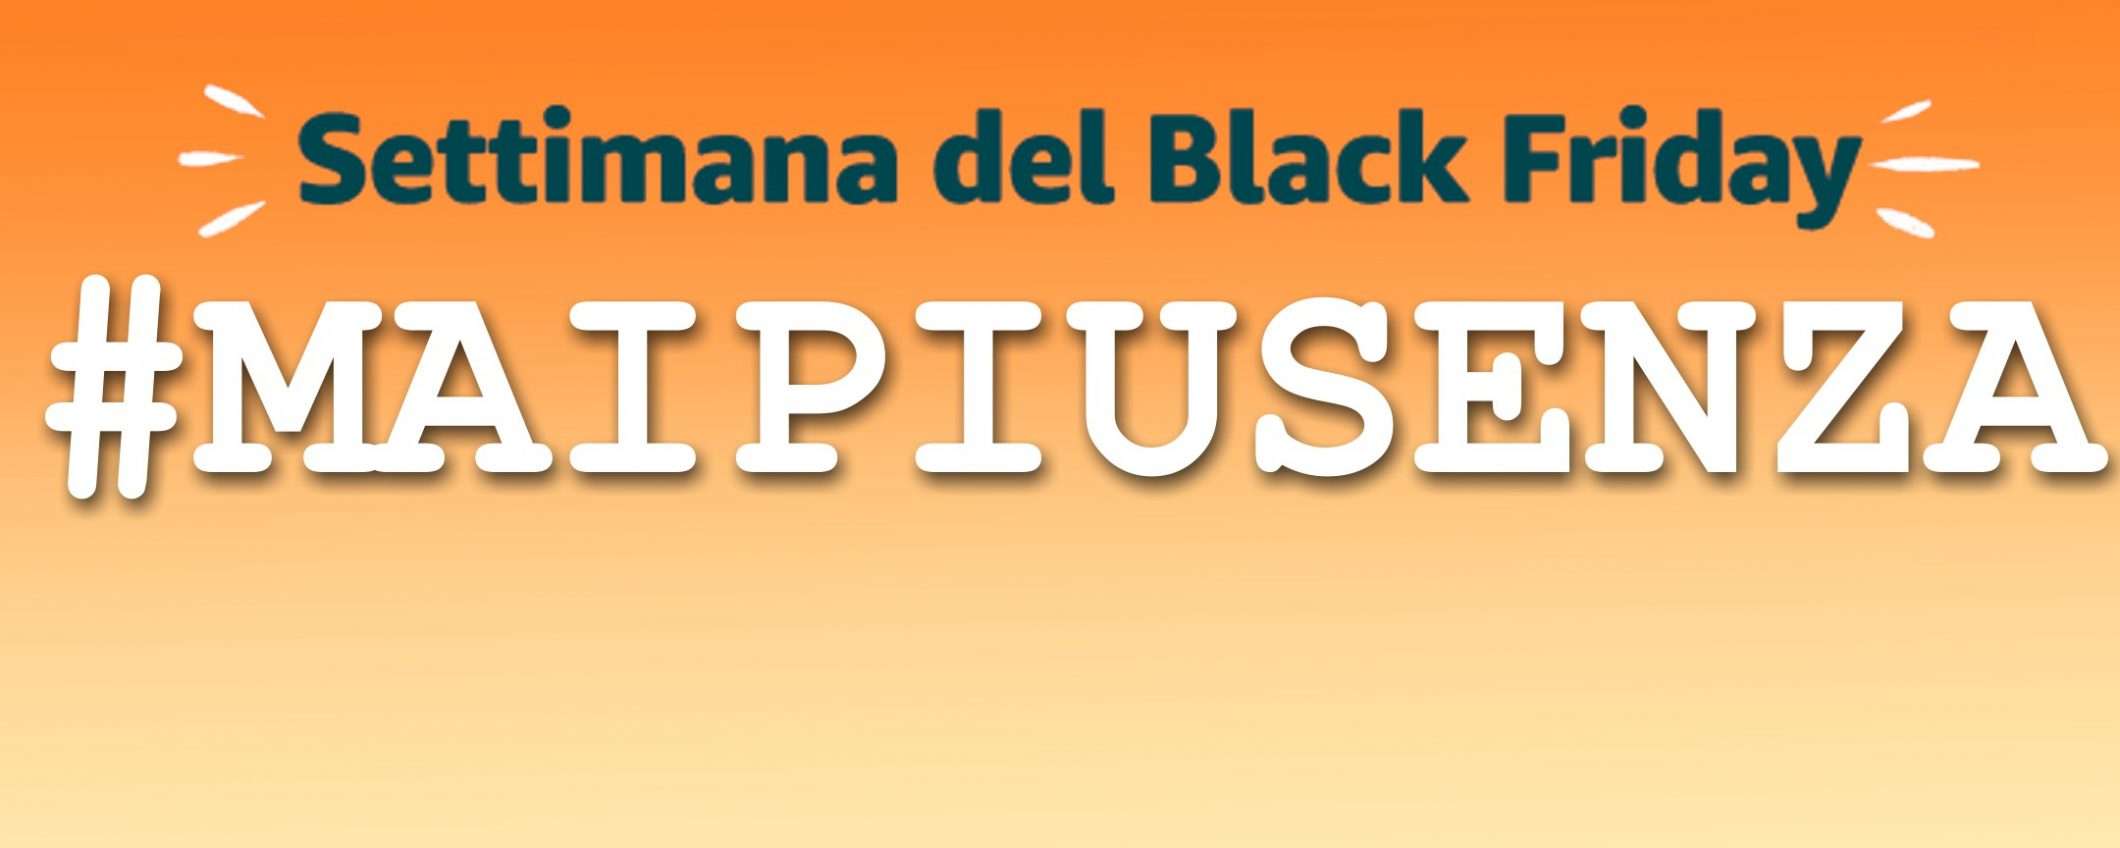 #maipiusenza, gli imperdibili del Black Friday